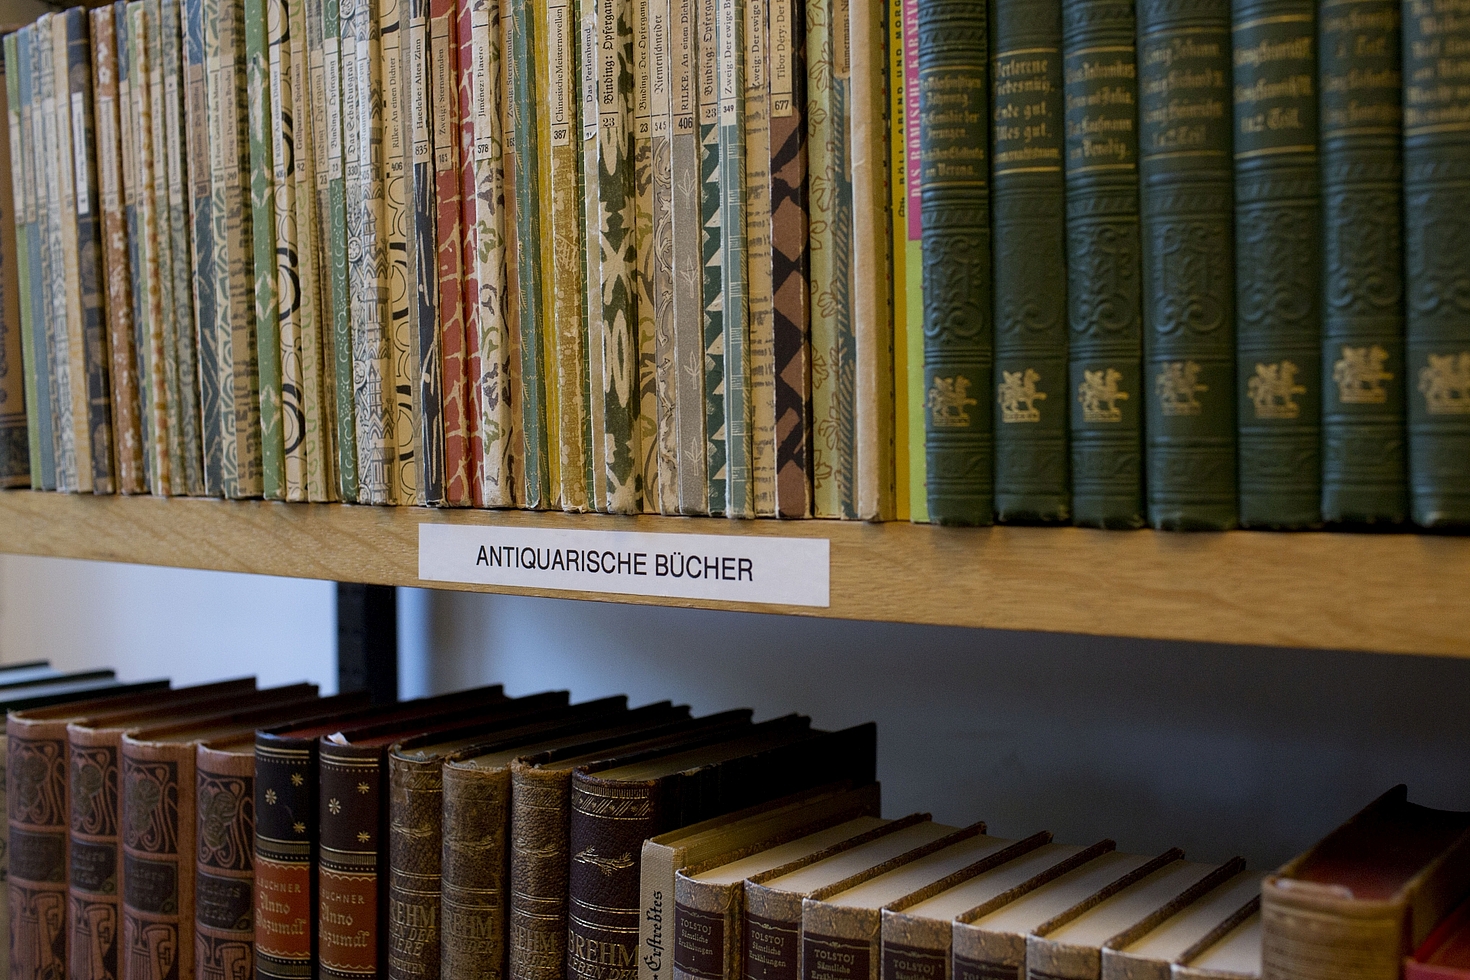 Foto: Regal mit antiquarischen Büchern